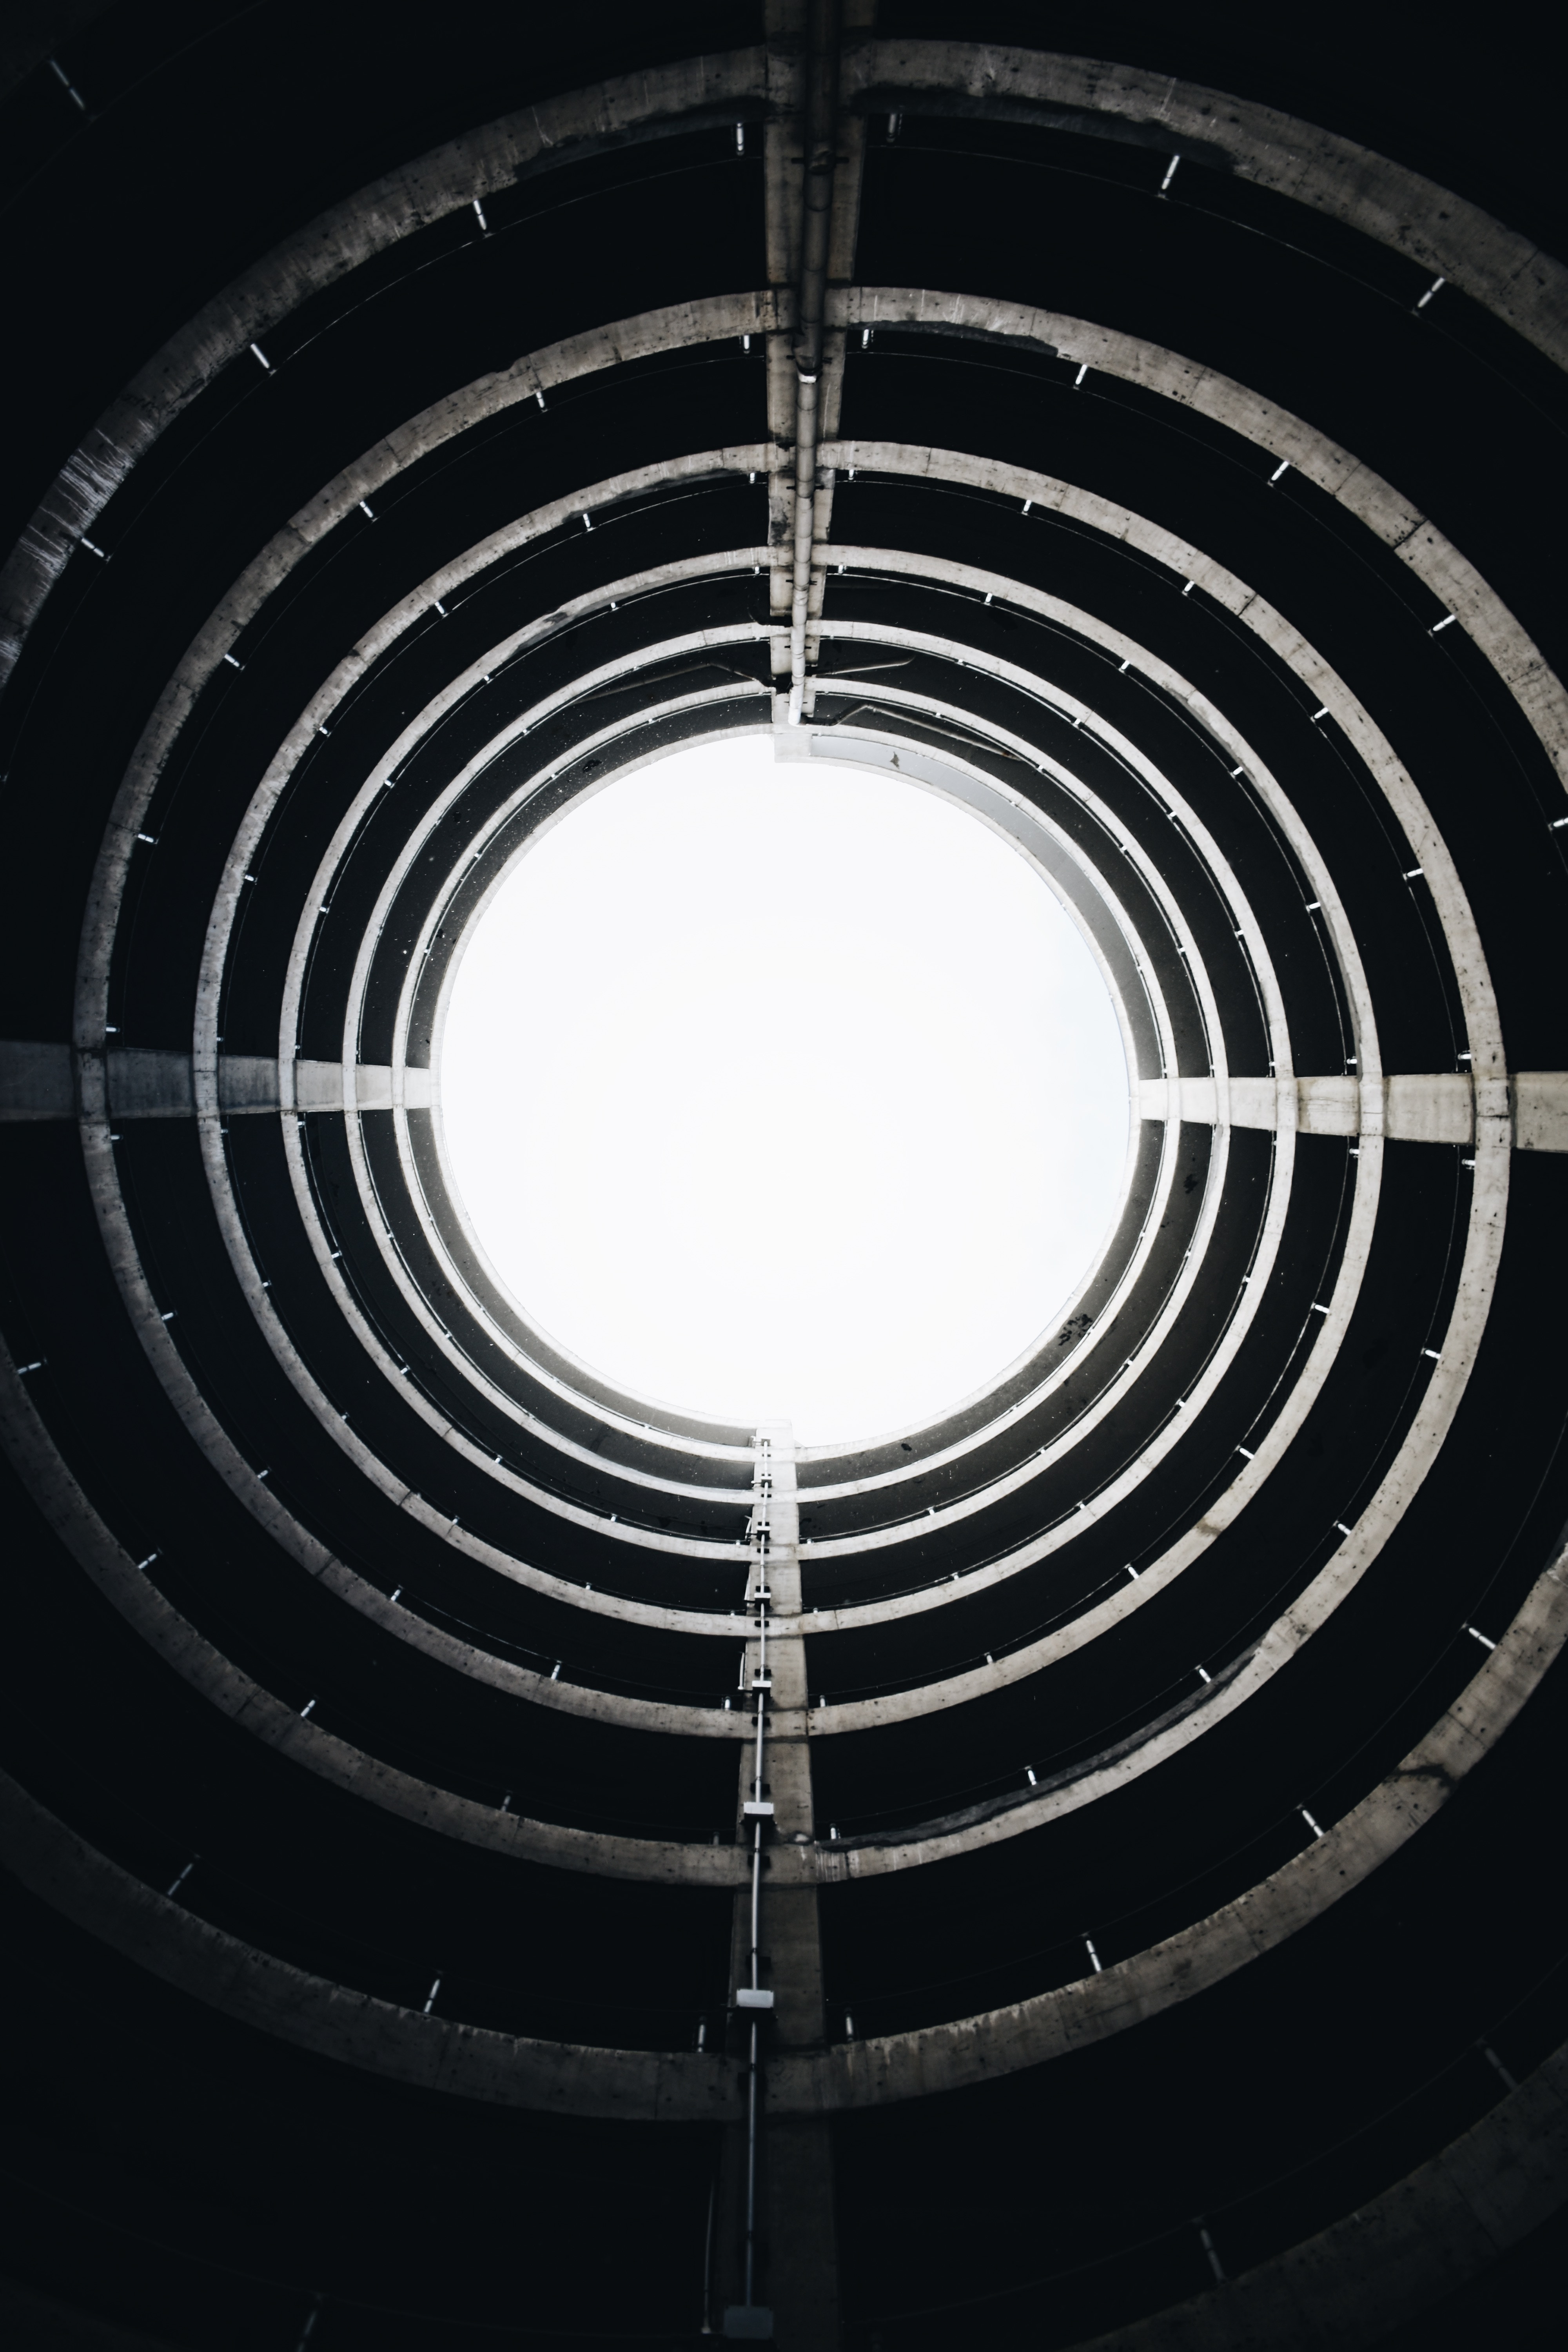 Fotografia em preto e brando de um prédio redondo, mostrando apenas a sua estrutura de concreto e tubulação. Como a foto é batida de dentro para fora, a sensação é estar dentro de um túnel com uma luz clara que indica a saída, ou mesmo a parte interna de um cano de um revólver.